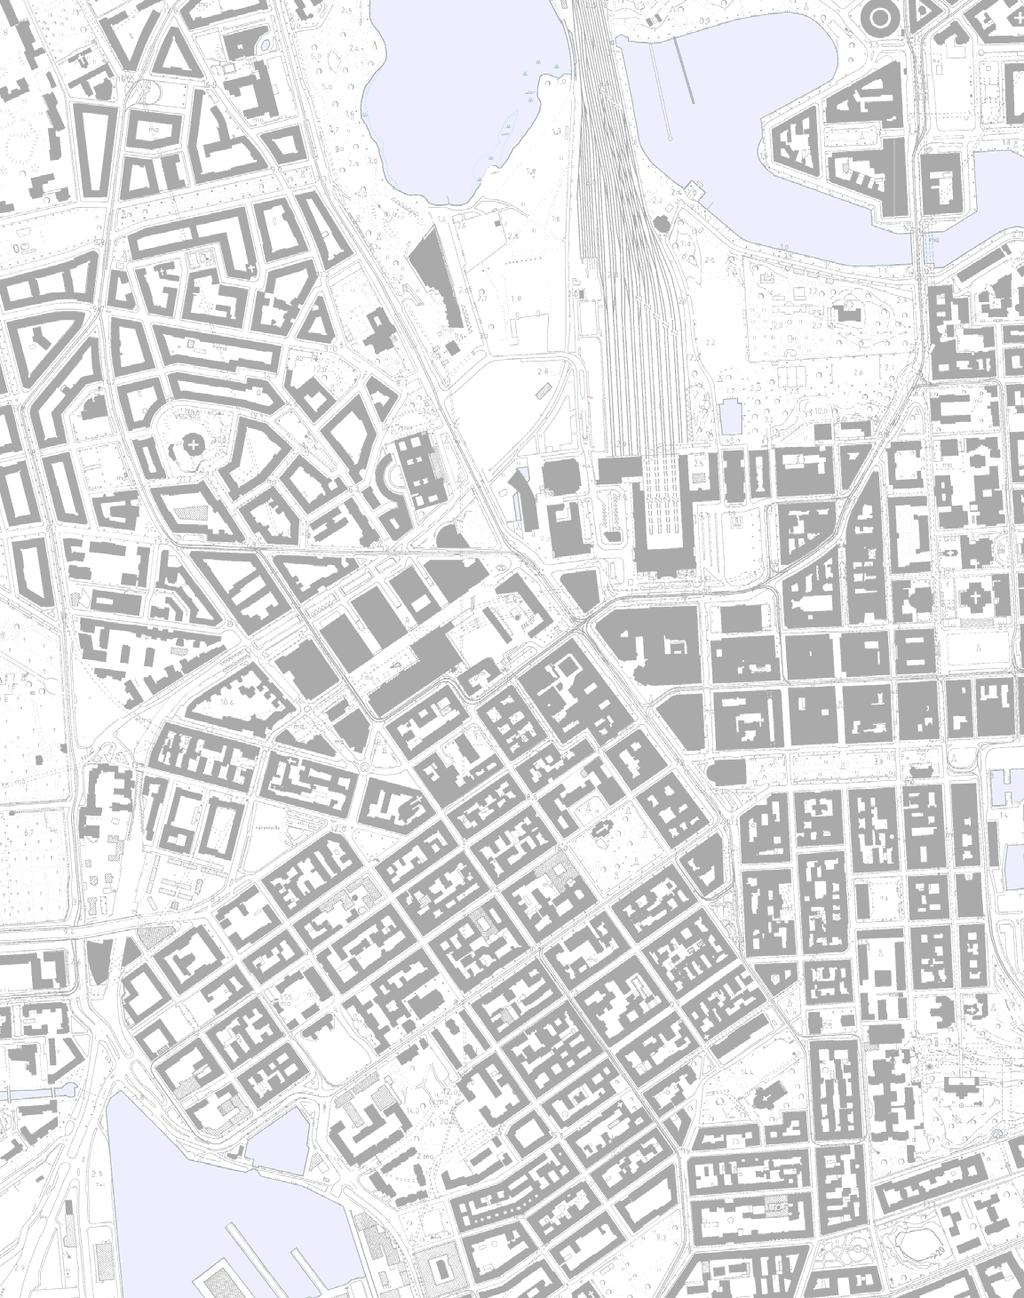 MAISEMAKUVA, ARVOT JA TOIMINNOT katutila, kaupunkitila liikenteen ympäristö alunperin työväestölle rakennettu pientalo-alue julkisten rakennusten ympäristö